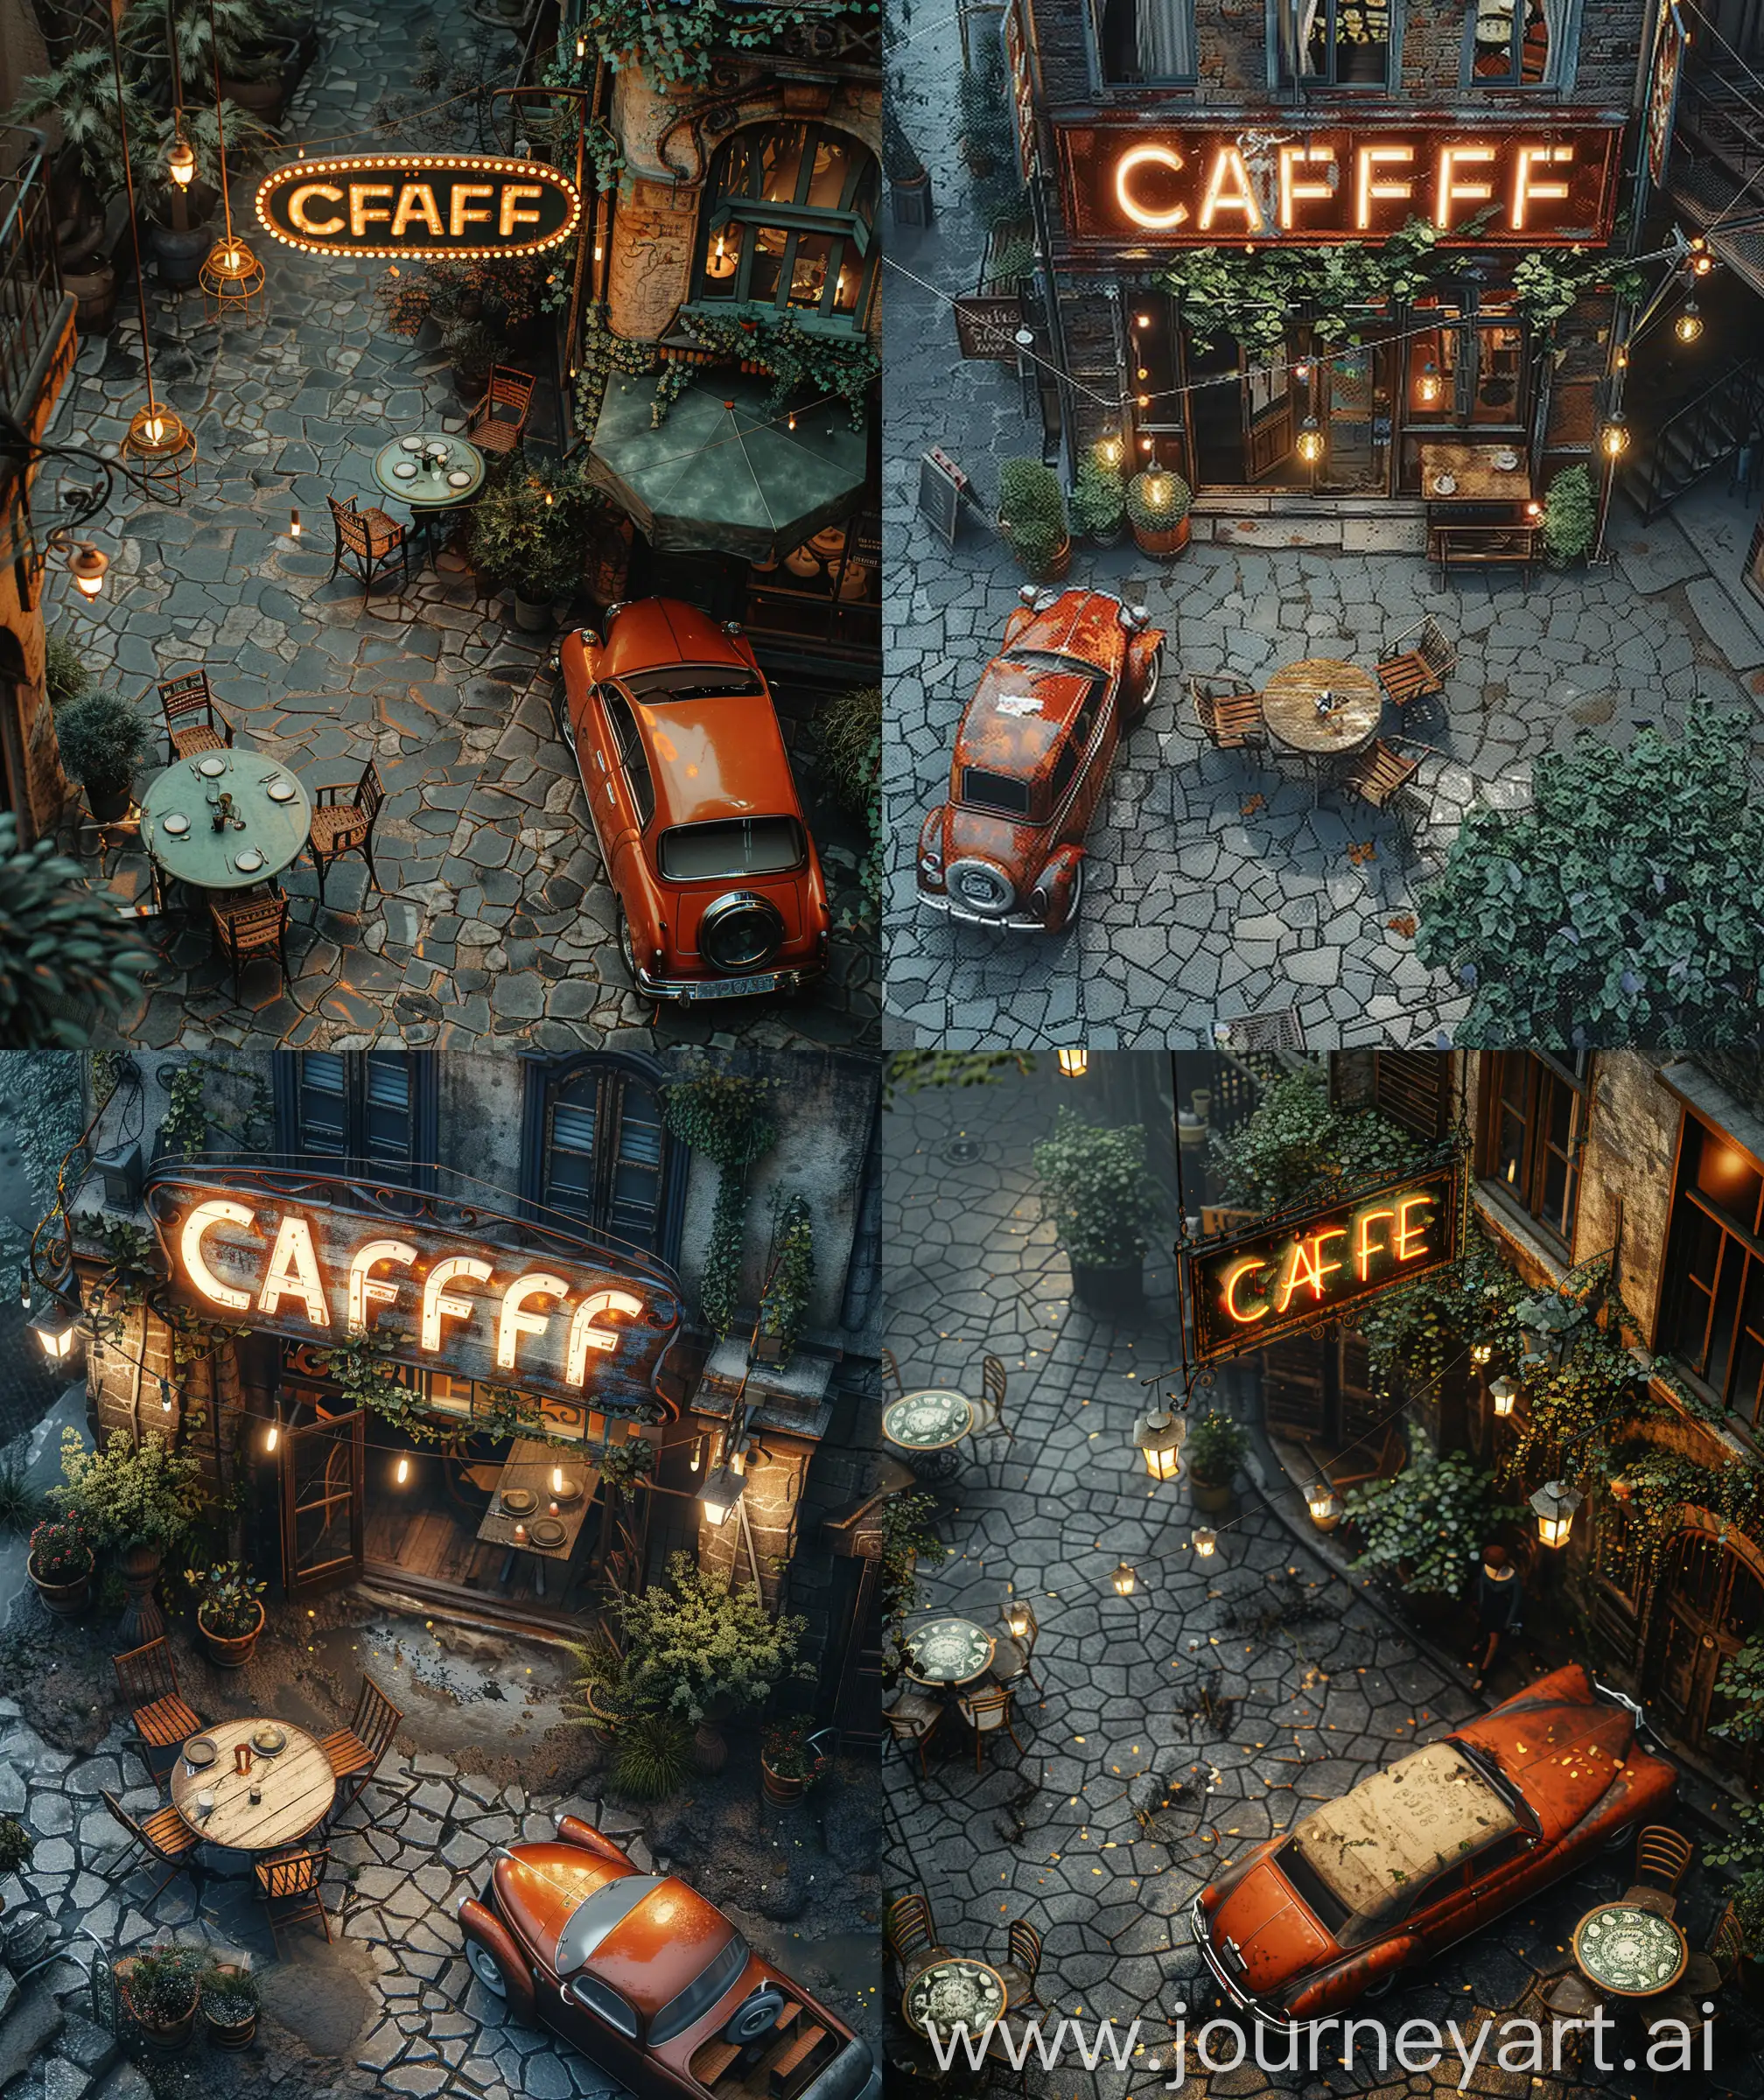 Vintage-Anime-Cafe-Market-Scene-with-Hanging-Signboard-and-RedOrange-Ambassador-Car